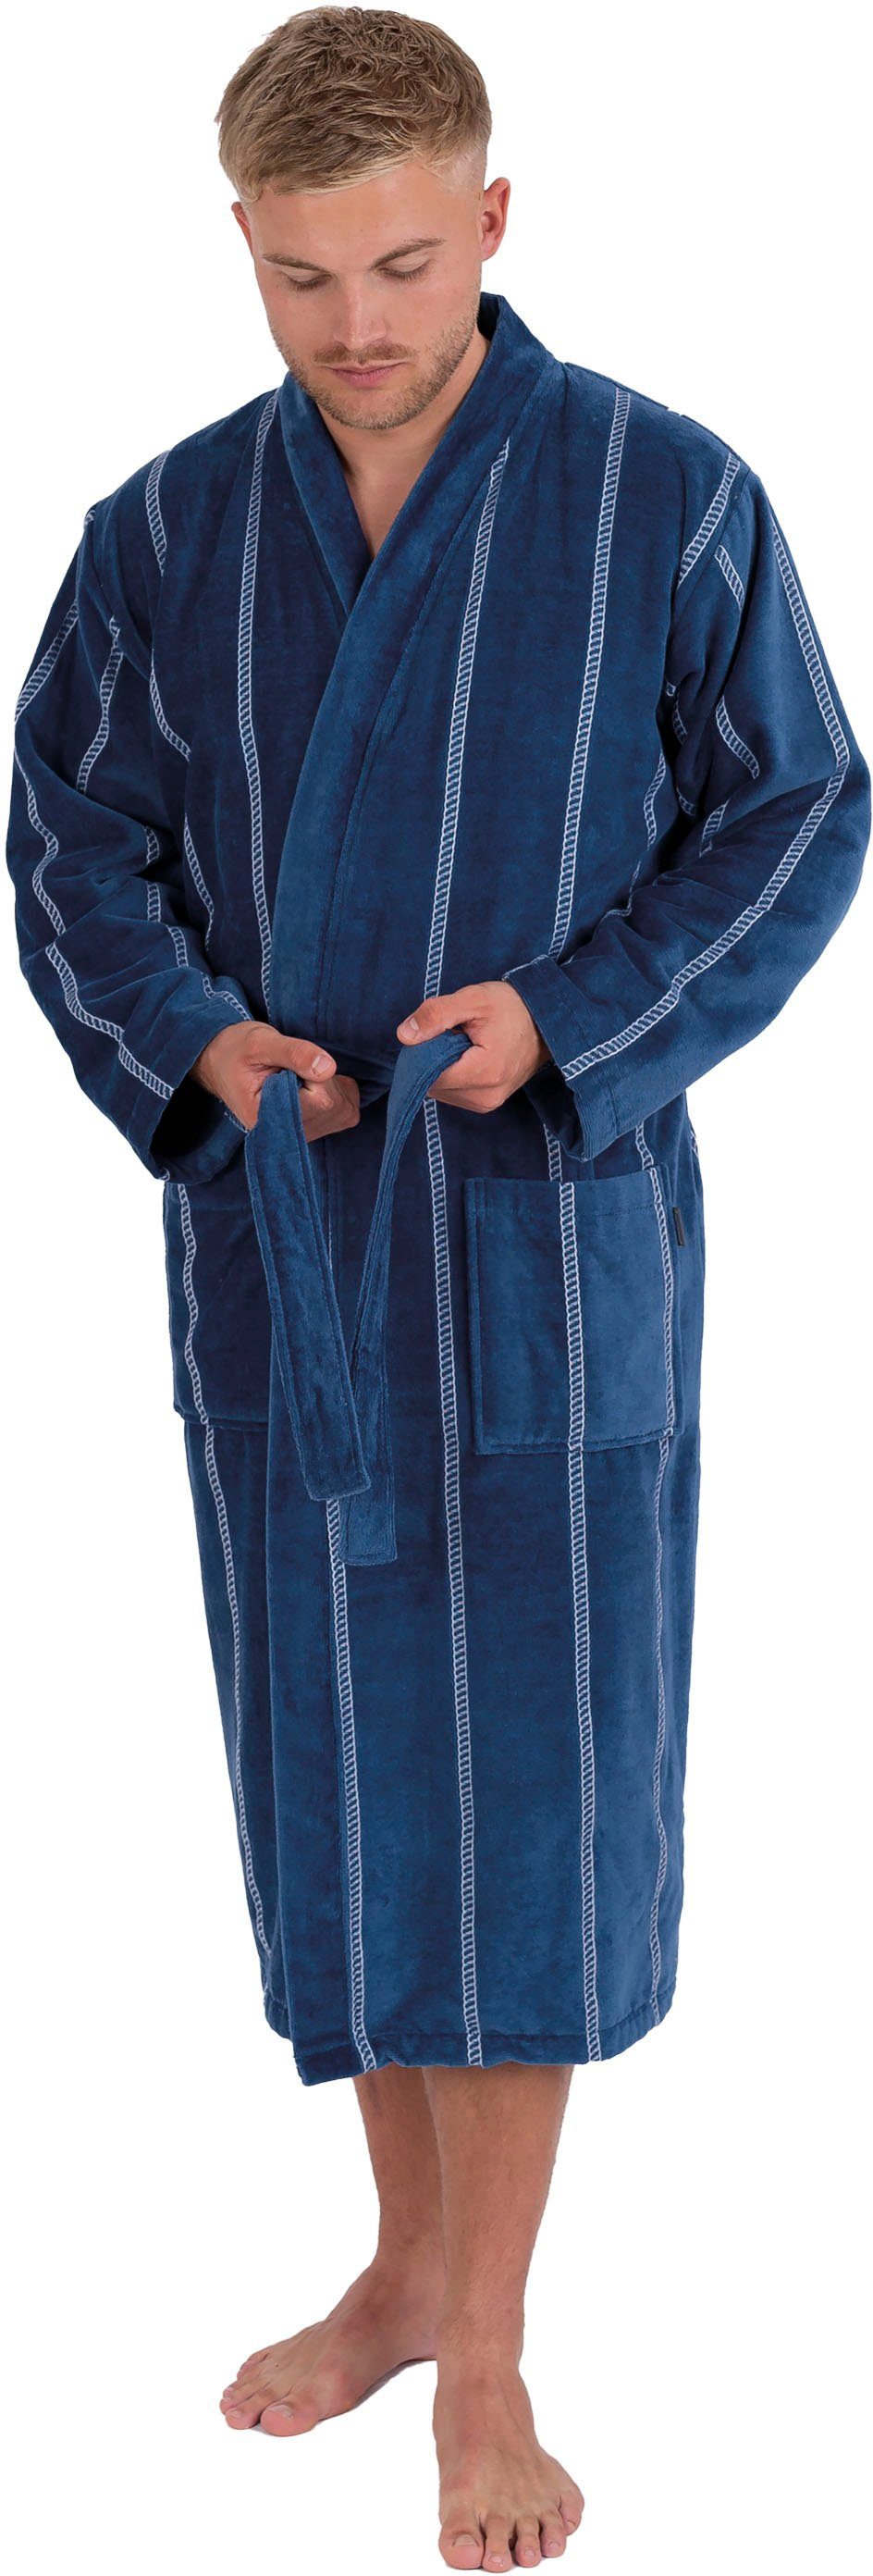 Wewo fashion Herrenbademantel 1607, Gürtel, lang Kimono-Kragen, mit Baumwolle, dunkelblau Langform, gestreift, Kimono-Kragen